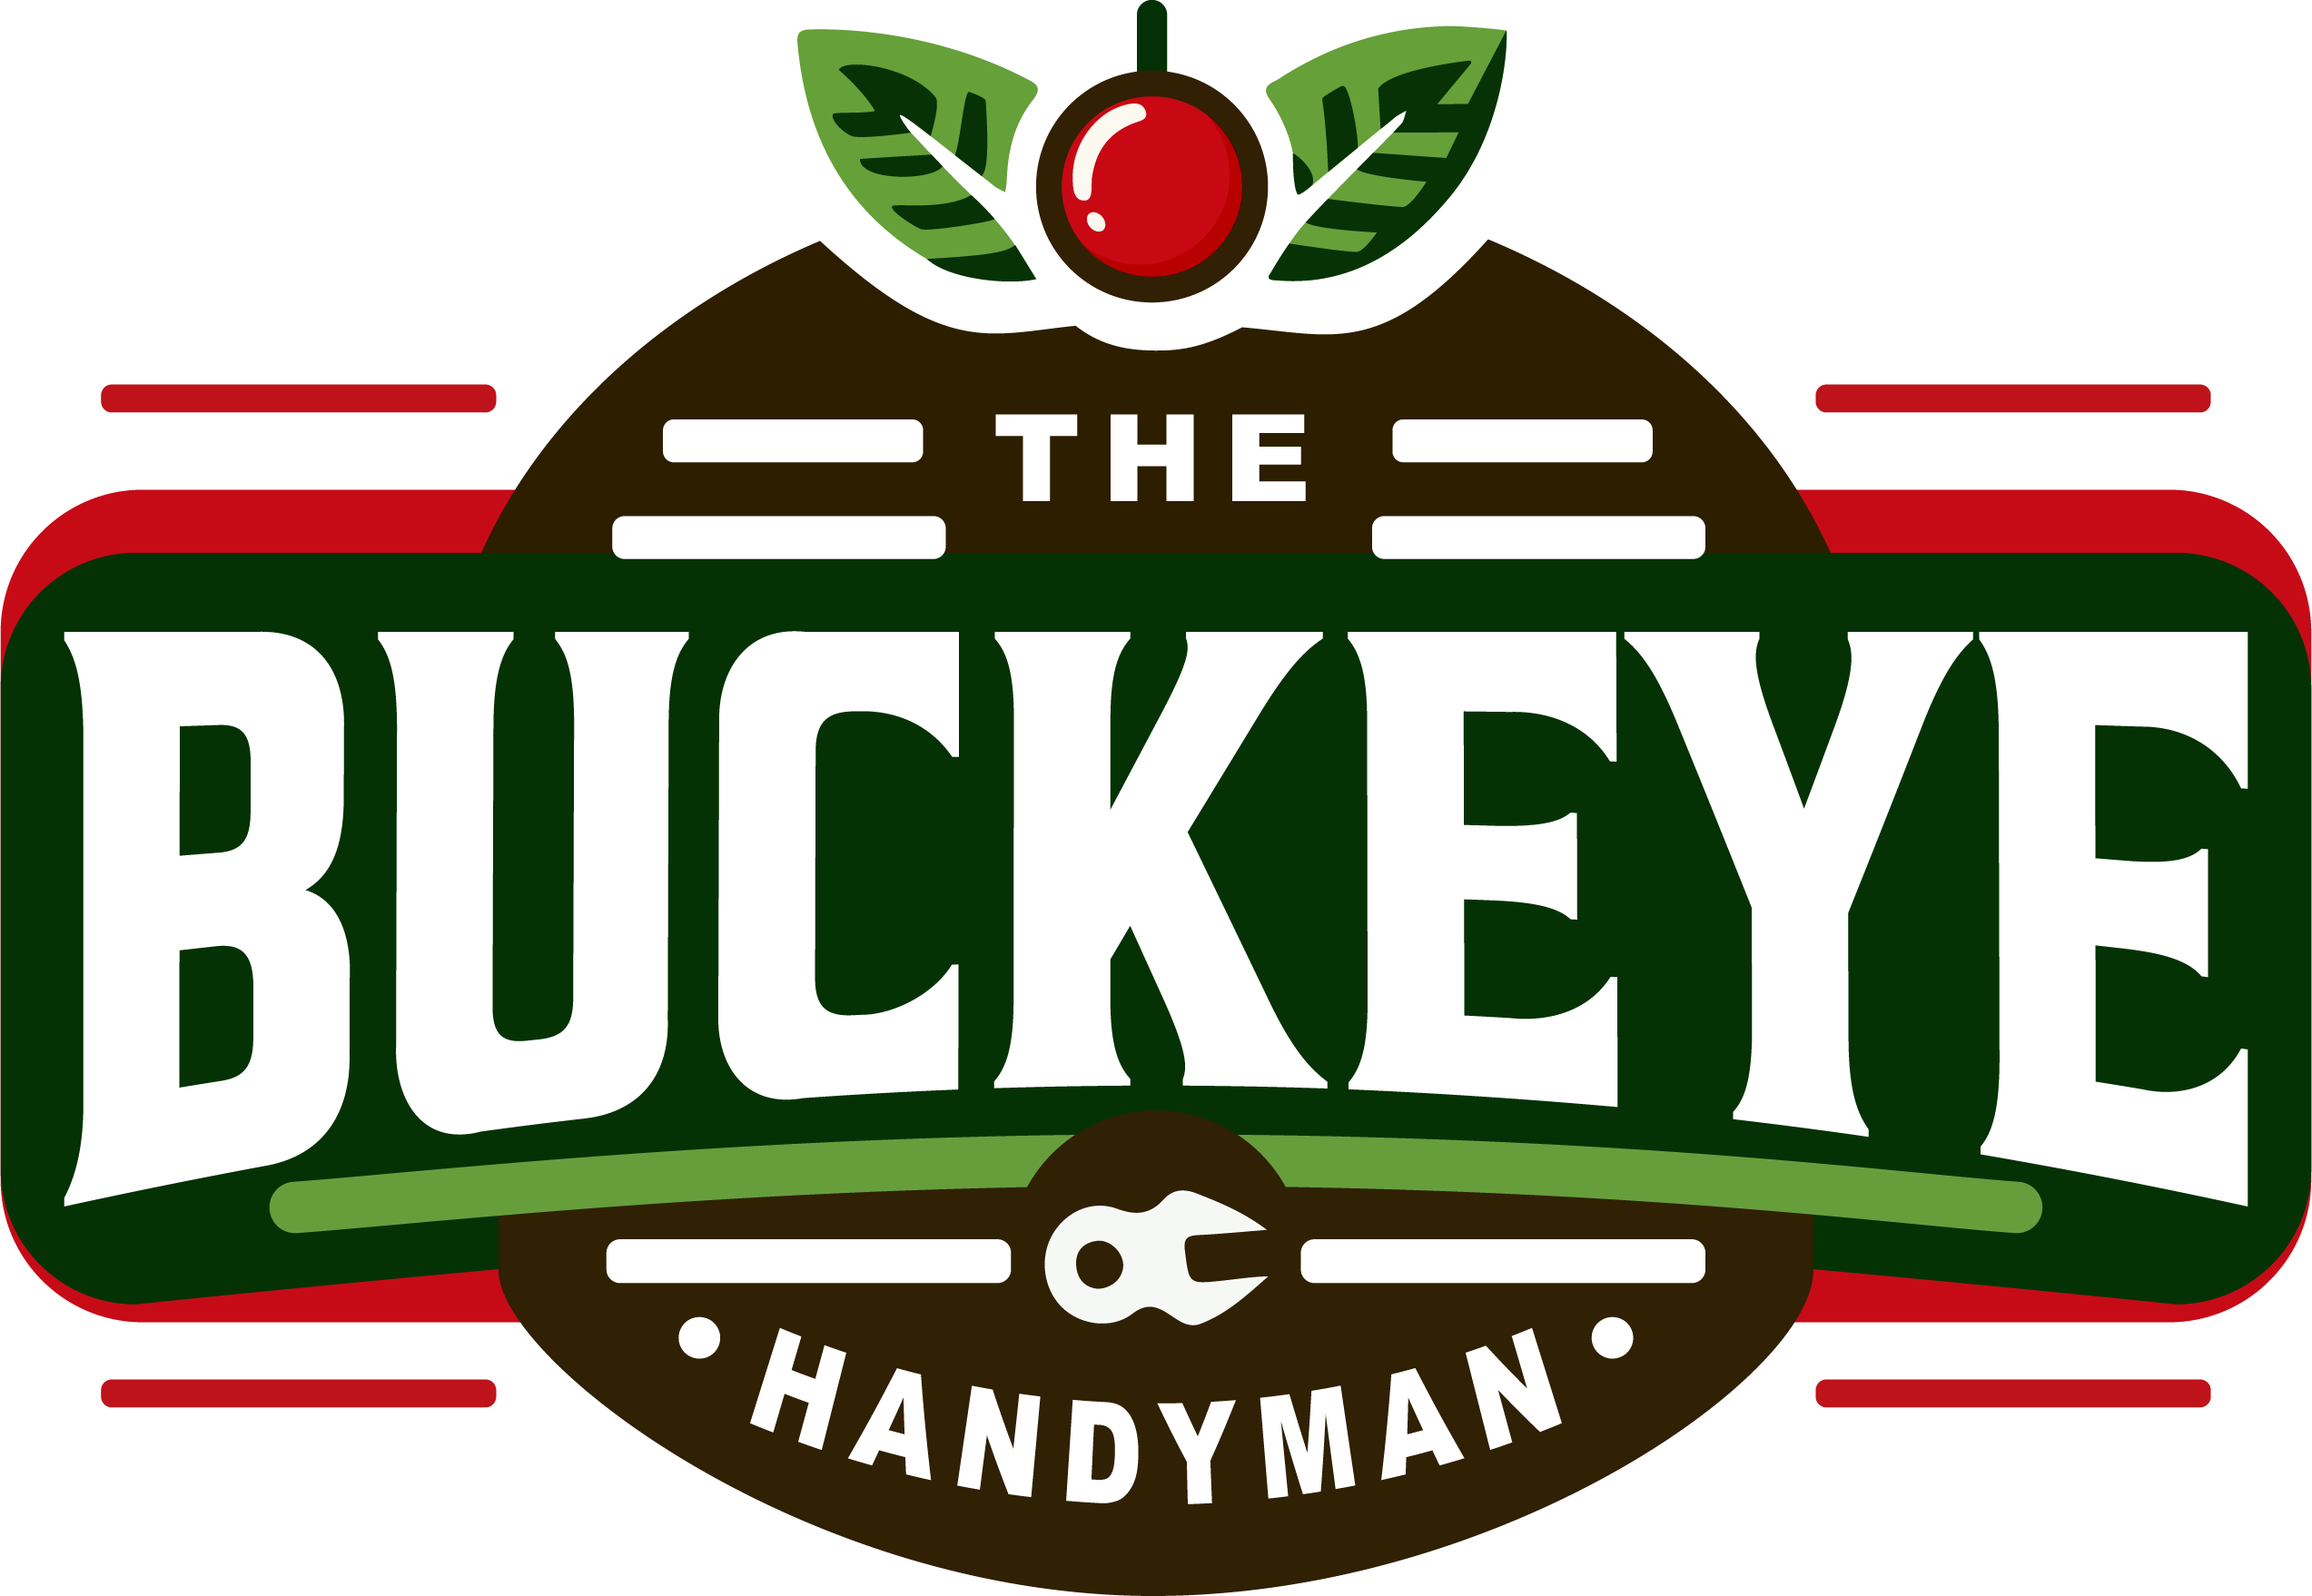 The Buckeye Handyman – Columbus Ohio